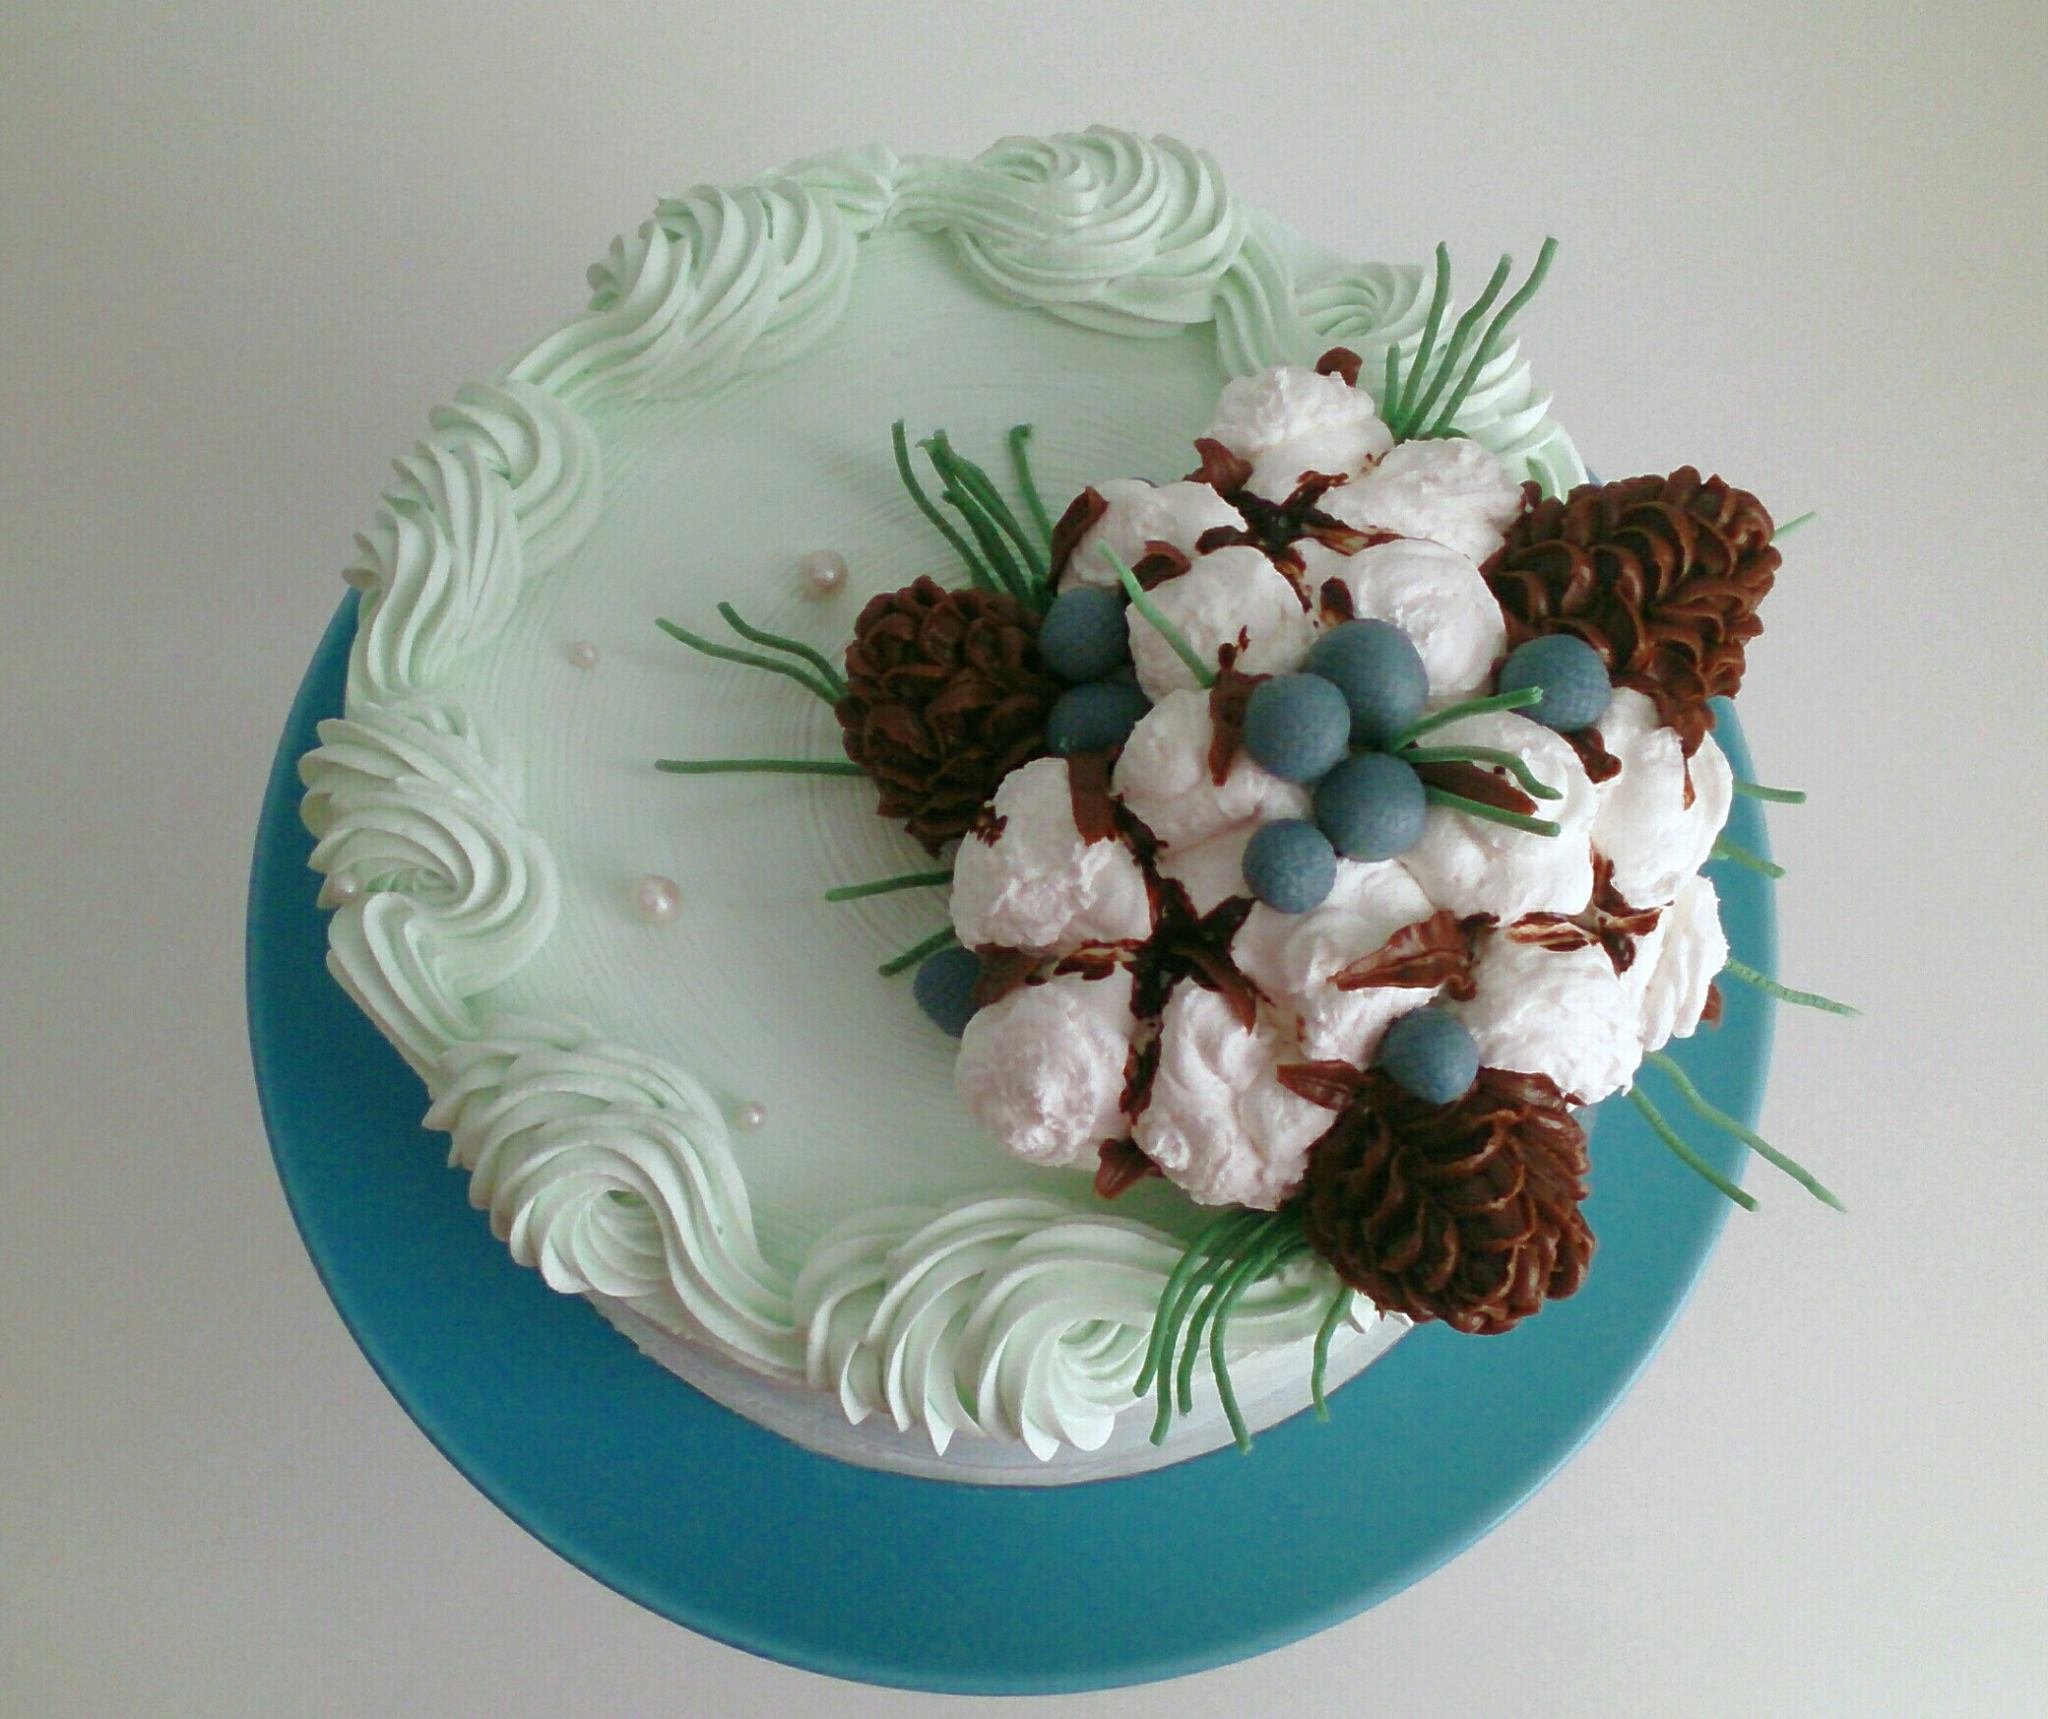 Надежда Карманцева цветы из крема для торта